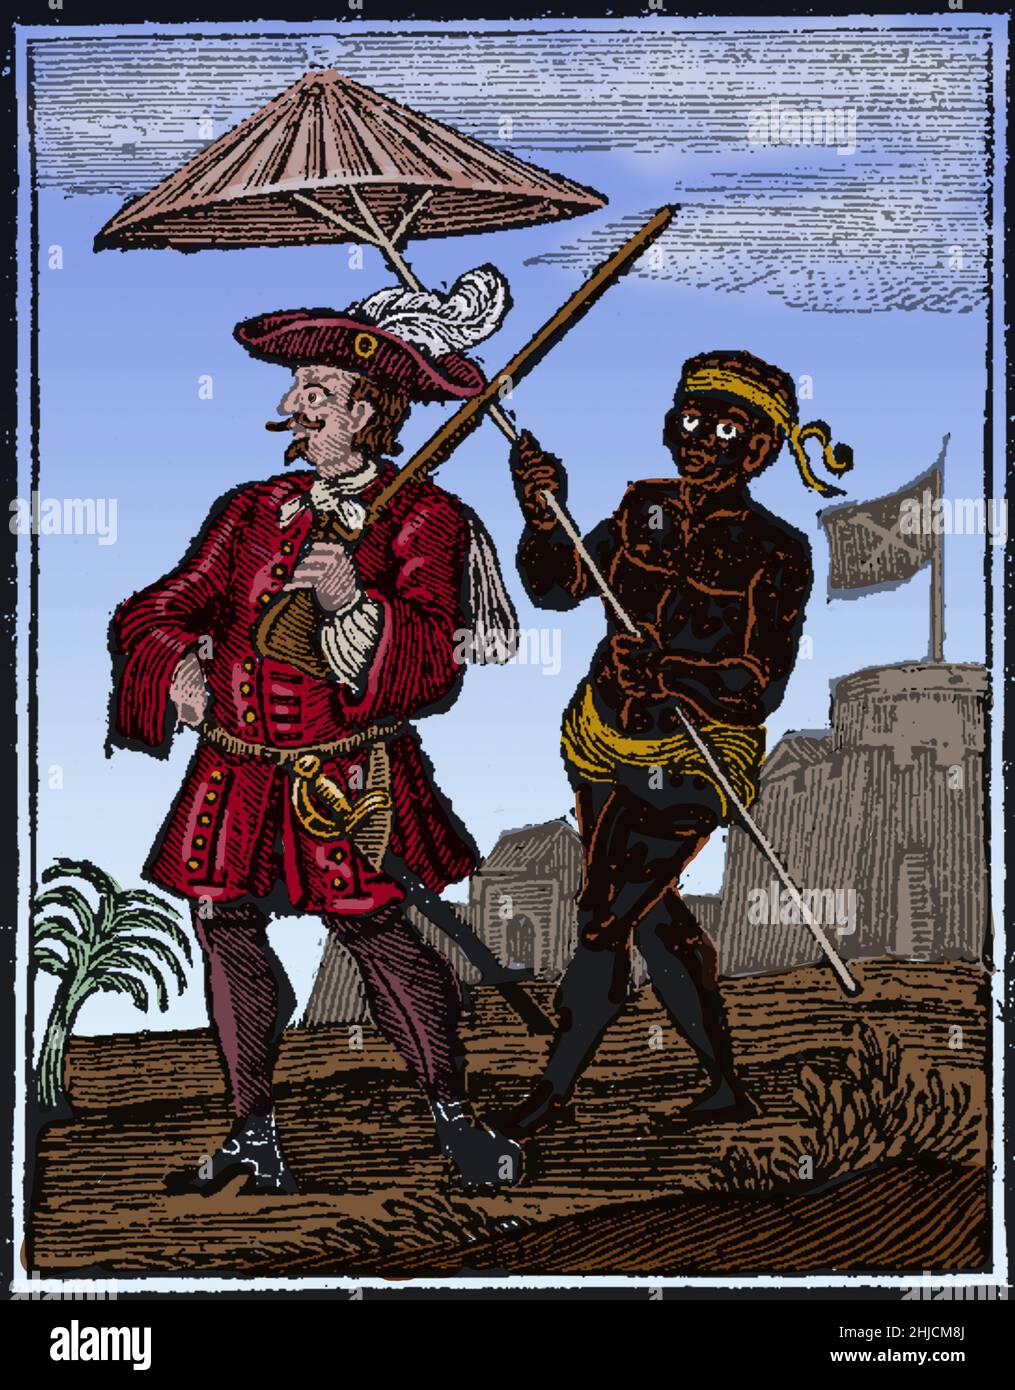 Henry Every (23. August 1659 - nach 1696) war ein englischer Pirat, der im Atlantik und im Indischen Ozean operierte. Berühmte Piraten-Kapitäne Thomas Tew, William Want, Thomas Wake und William May segelten unter seiner Führung. Der größte Fang seiner Karriere war die Gang-i-Sawai, Teil des Grand Moghul's of India Convoy of Ships. Sie plündeten etwa 600,000 Pfund Gold, Silber und Juwelen. Jeder löste seine Flotte auf, segelte in die Karibik, wo er seinen Namen in Benjamin Bridgeman änderte. Er segelte mit Überresten seiner Crew nach Irland. Einige von ihnen wurden gefangen genommen und gehängt, aber er entkam und va Stockfoto